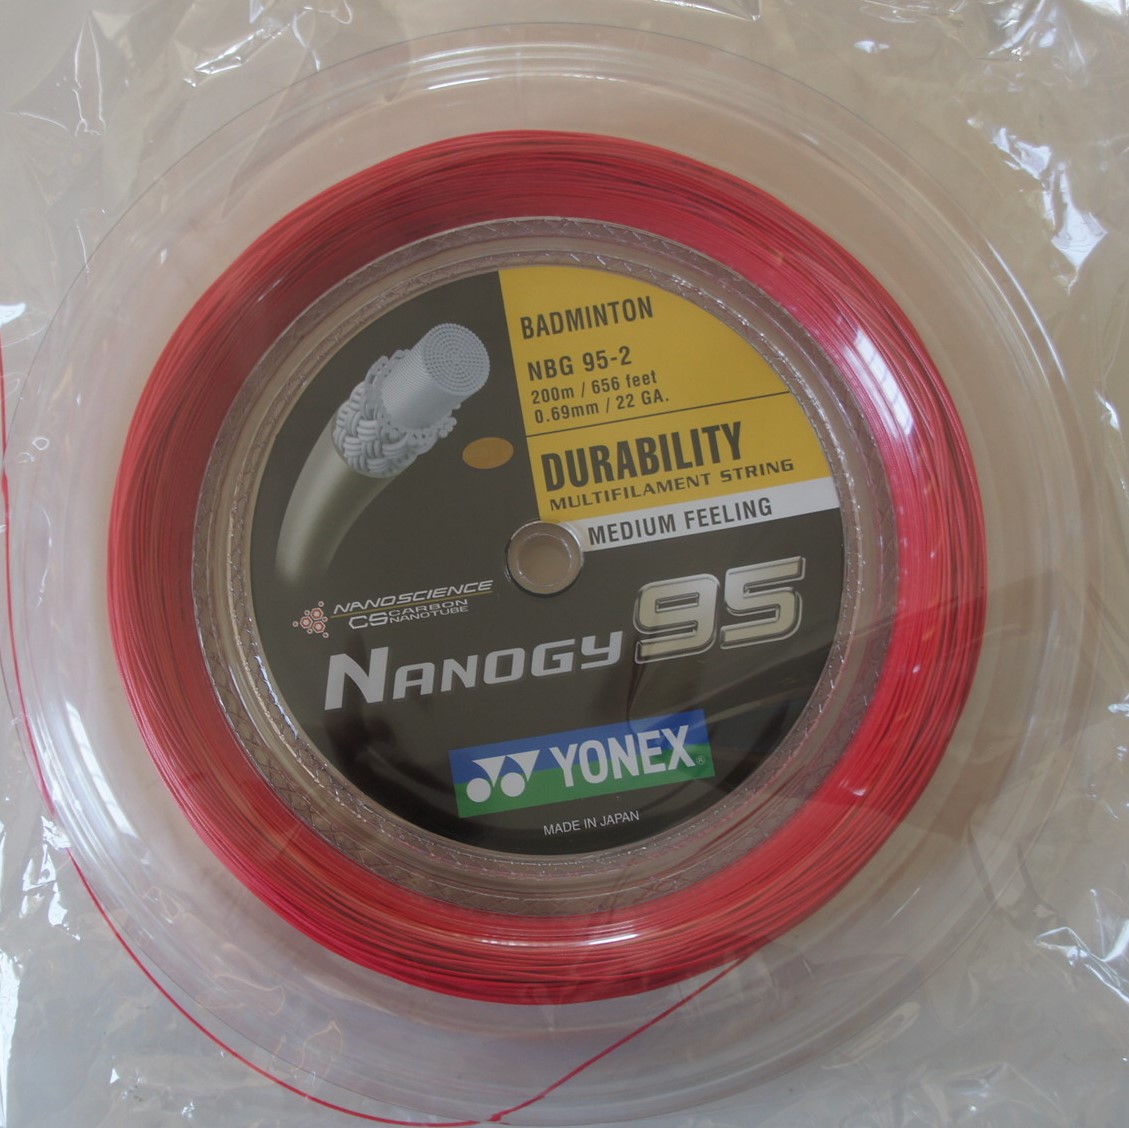 YONEX Nanogy 95 NBG95 Badminton Coil String 200m NBG95-2, RED